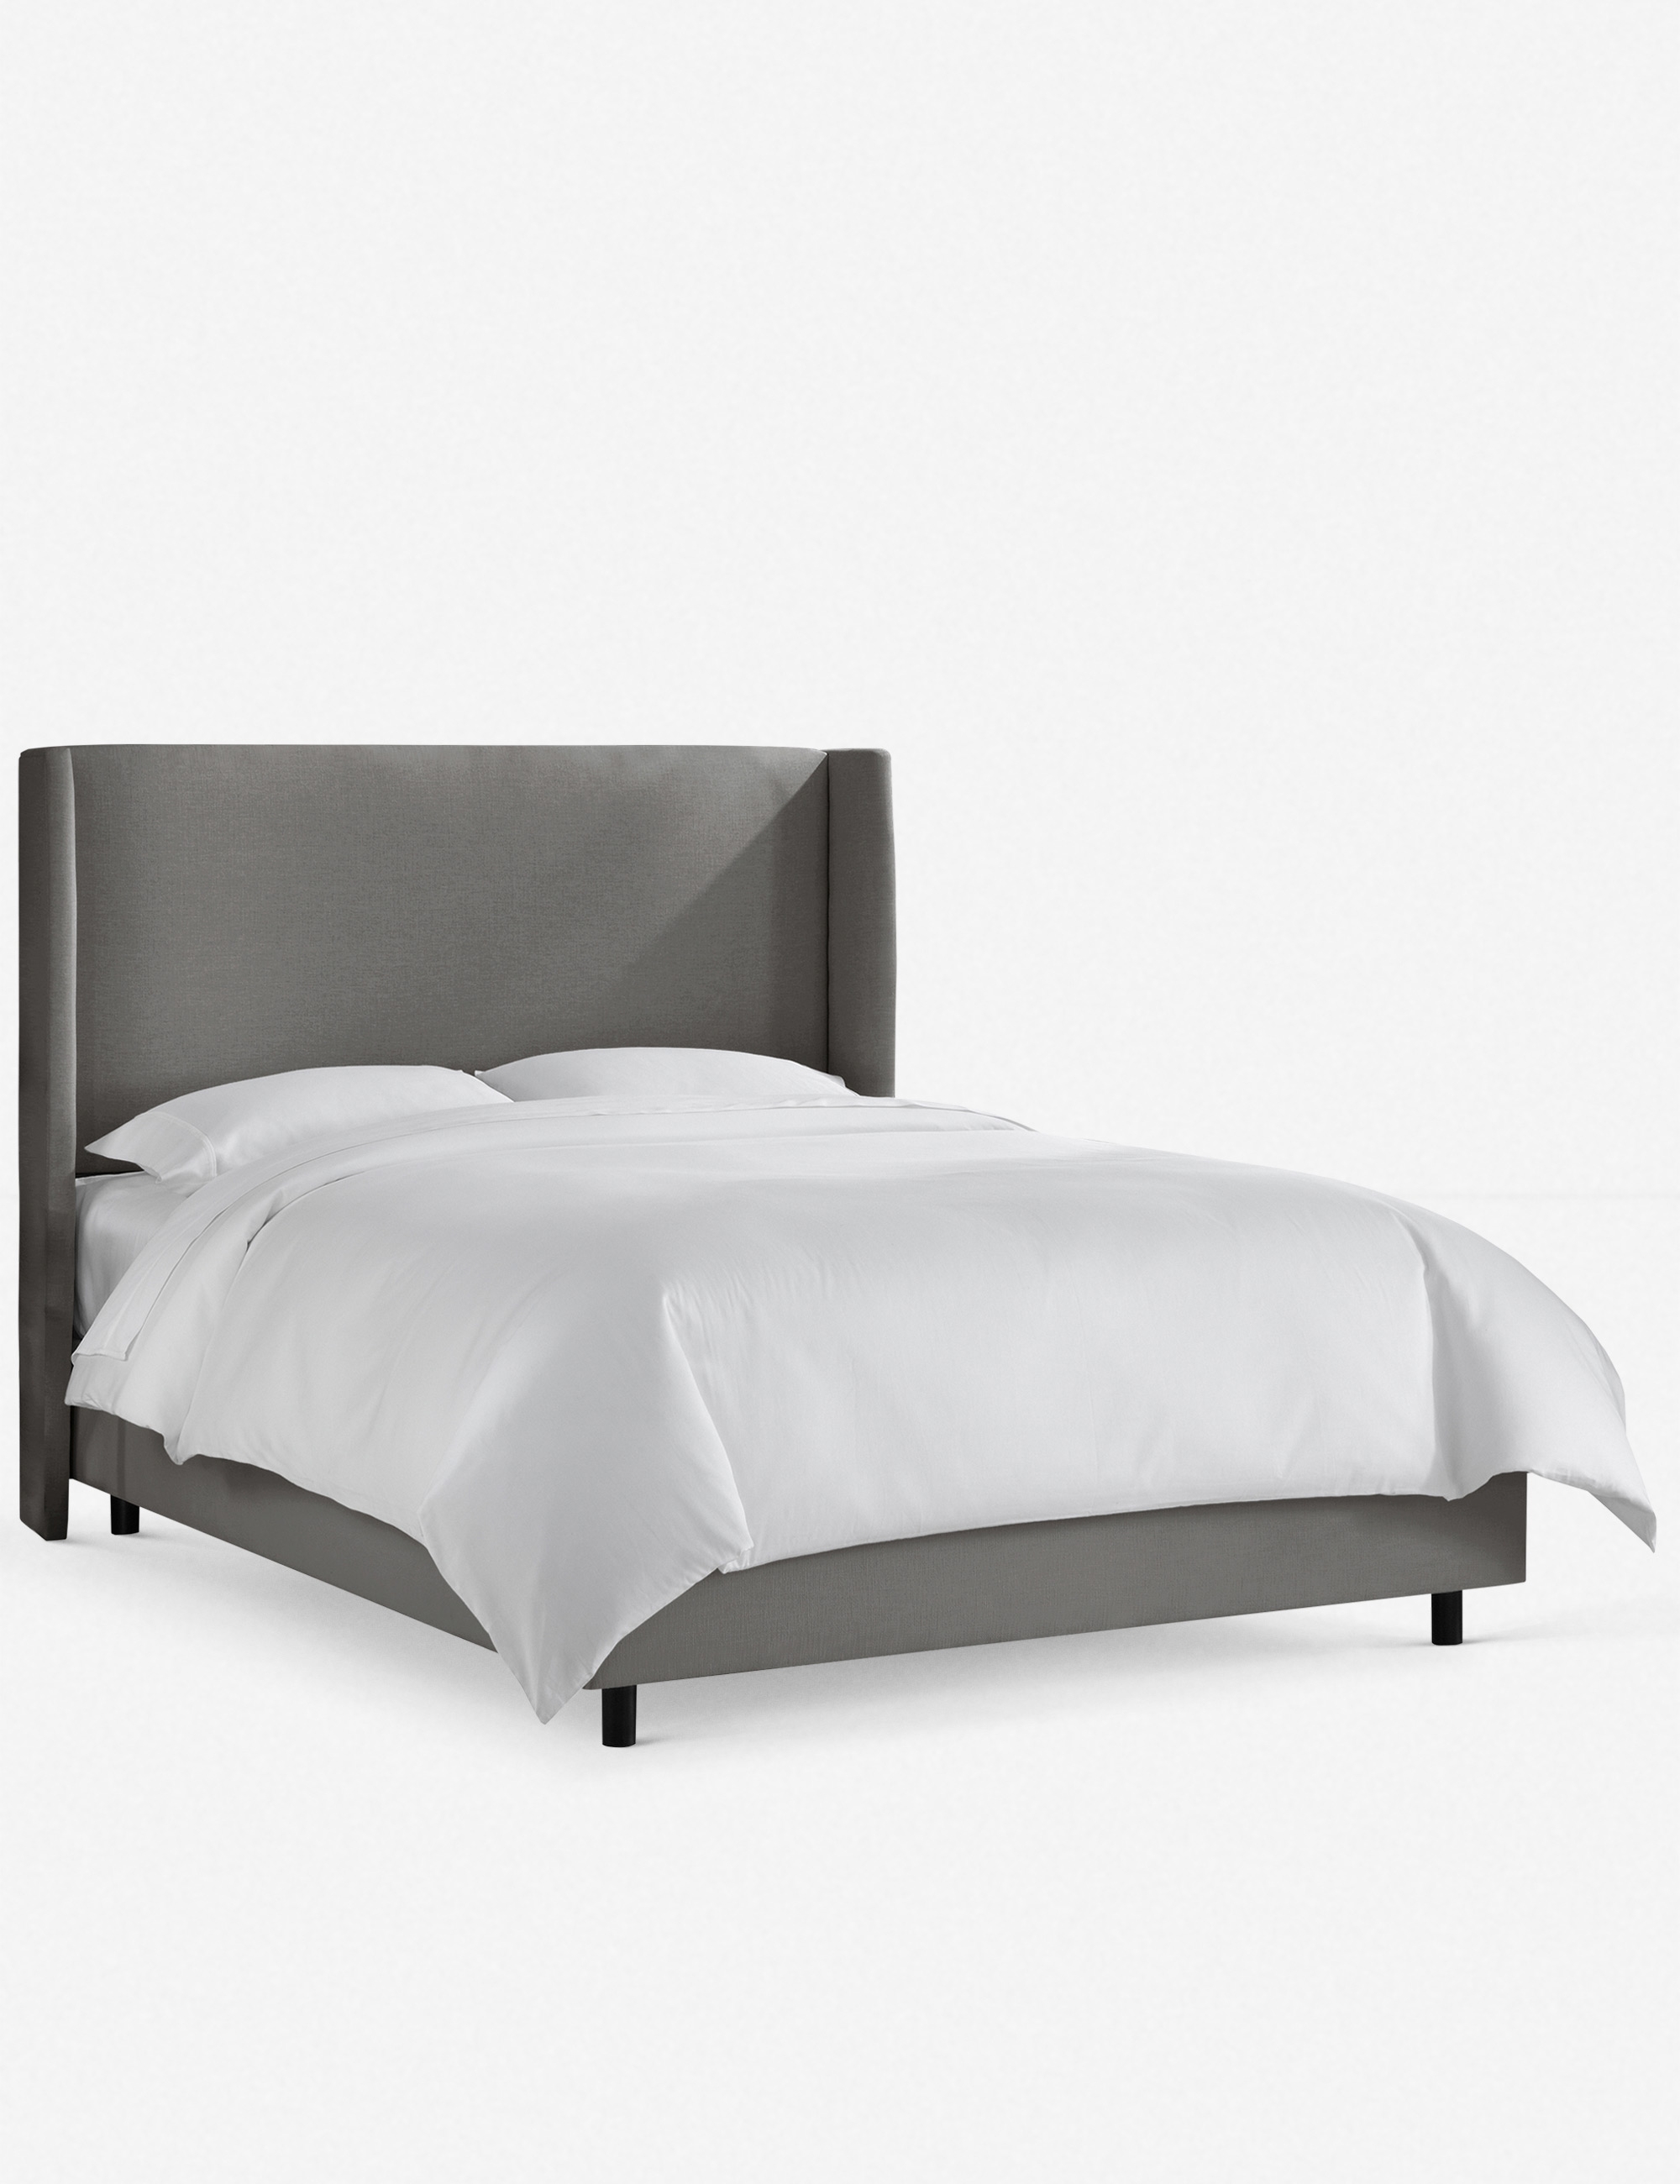 Adara Linen Bed, Gray Queen - Image 0